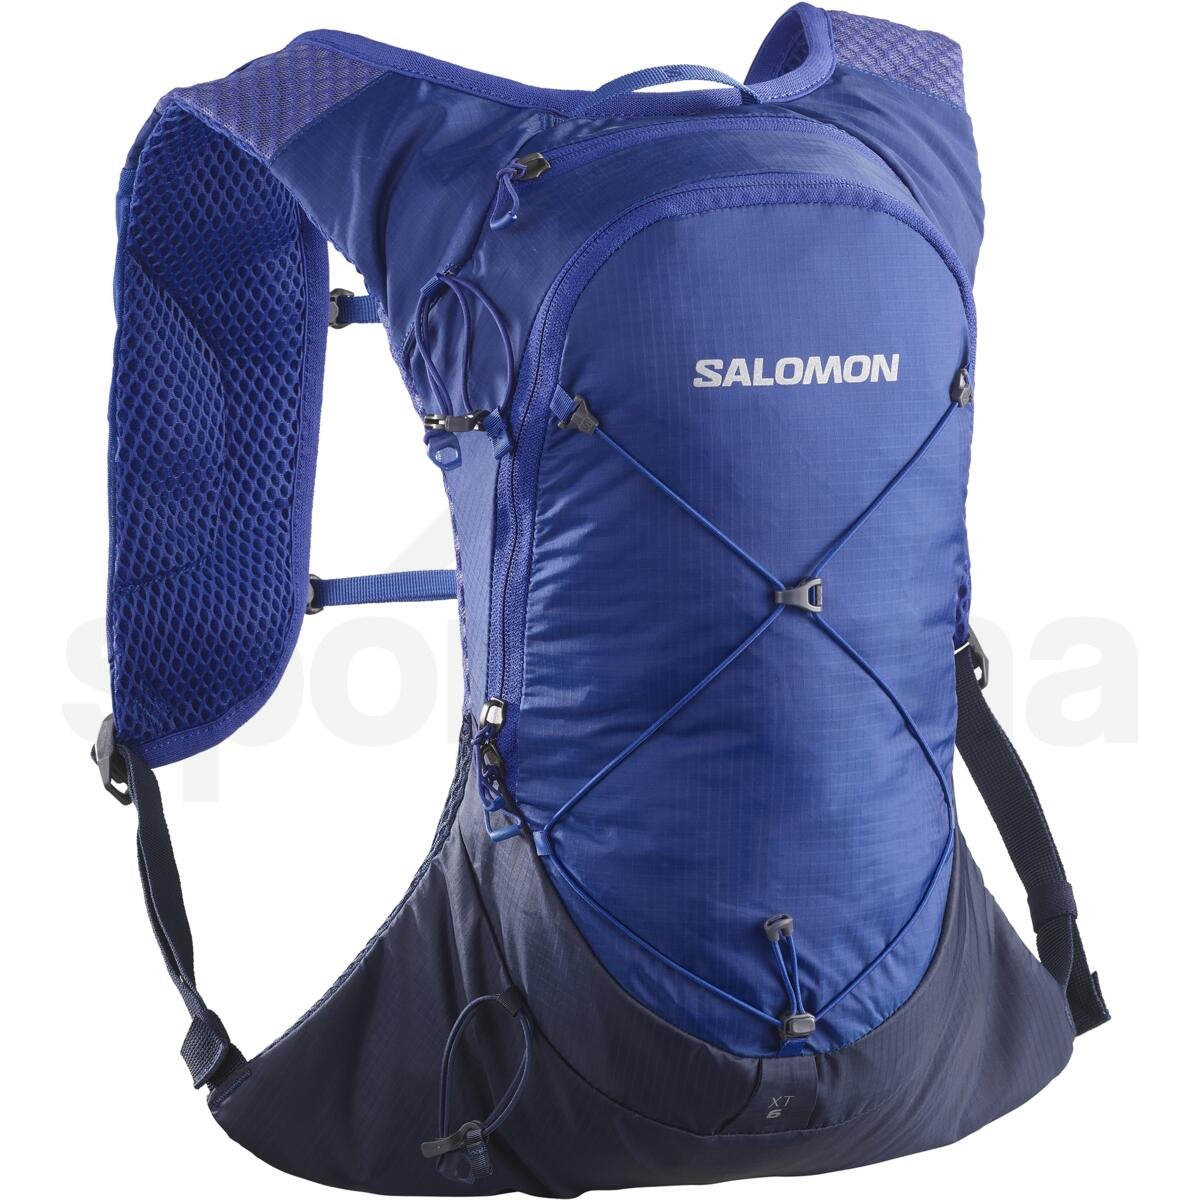 Batoh Salomon XT 6 - modrá